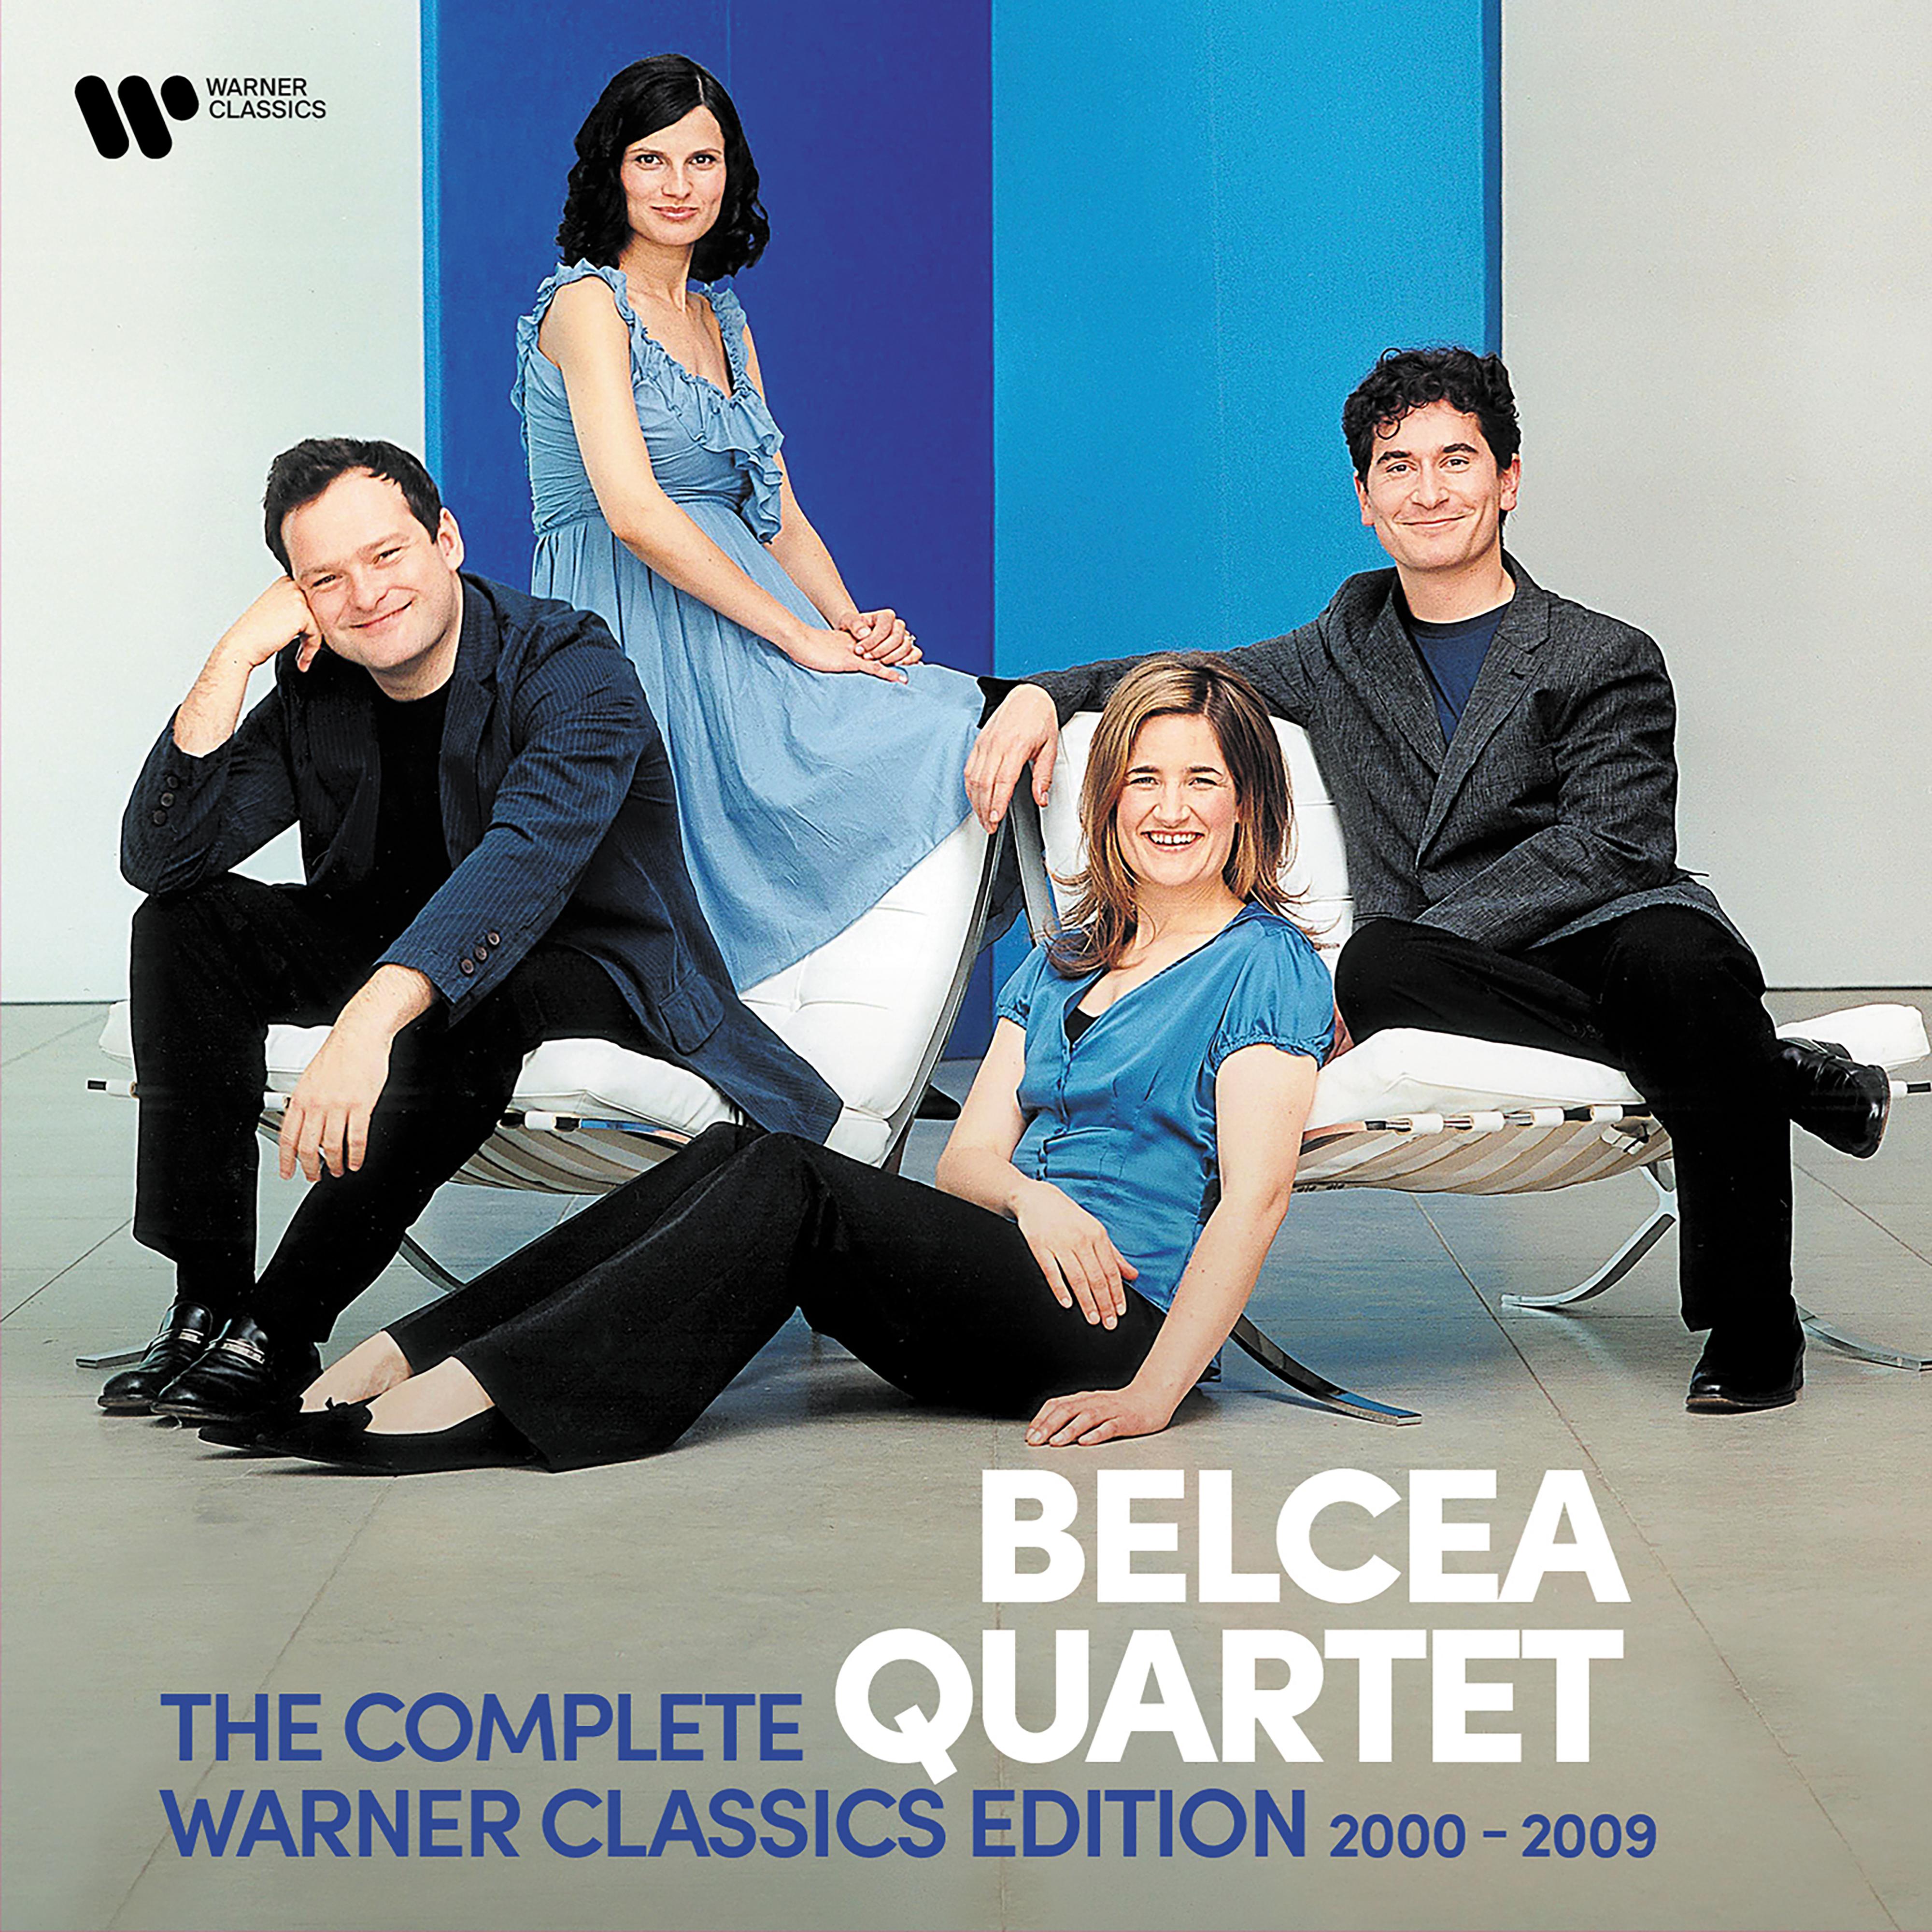 Belcea Quartet - La bonne chanson, Op. 61:No. 3, La lune blanche luit dans les bois (Version for Voice, Piano and String Quintet)